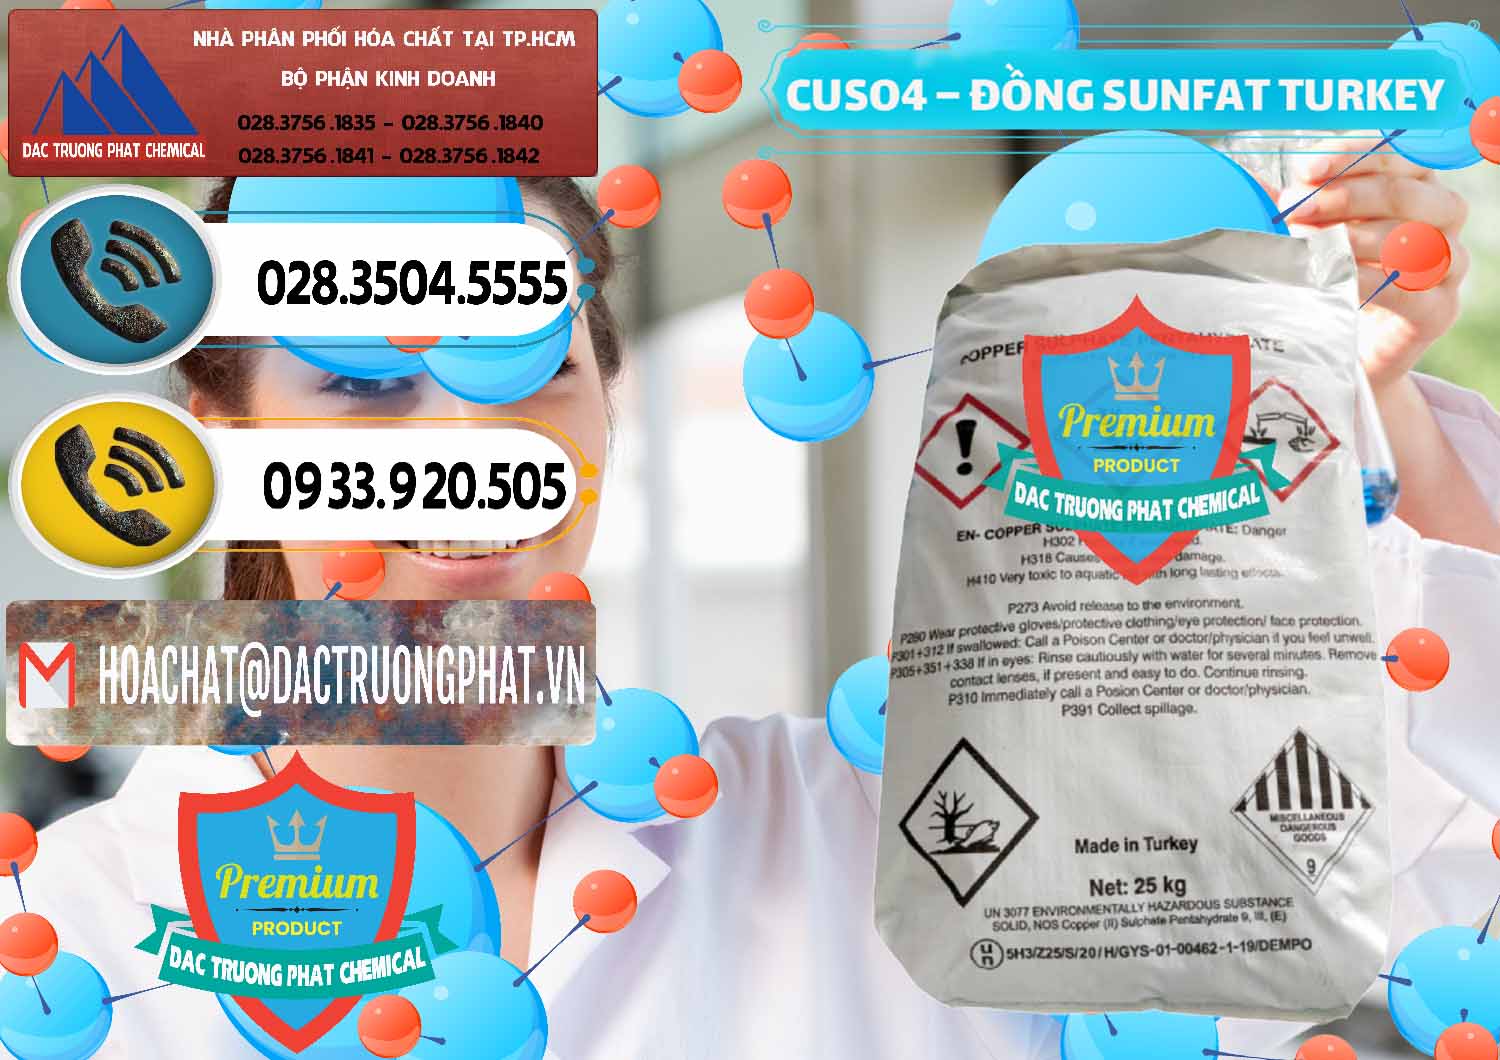 Cty bán _ phân phối CuSO4 – Đồng Sunfat Thổ Nhĩ Kỳ Turkey - 0481 - Chuyên kinh doanh - cung cấp hóa chất tại TP.HCM - hoachatdetnhuom.vn